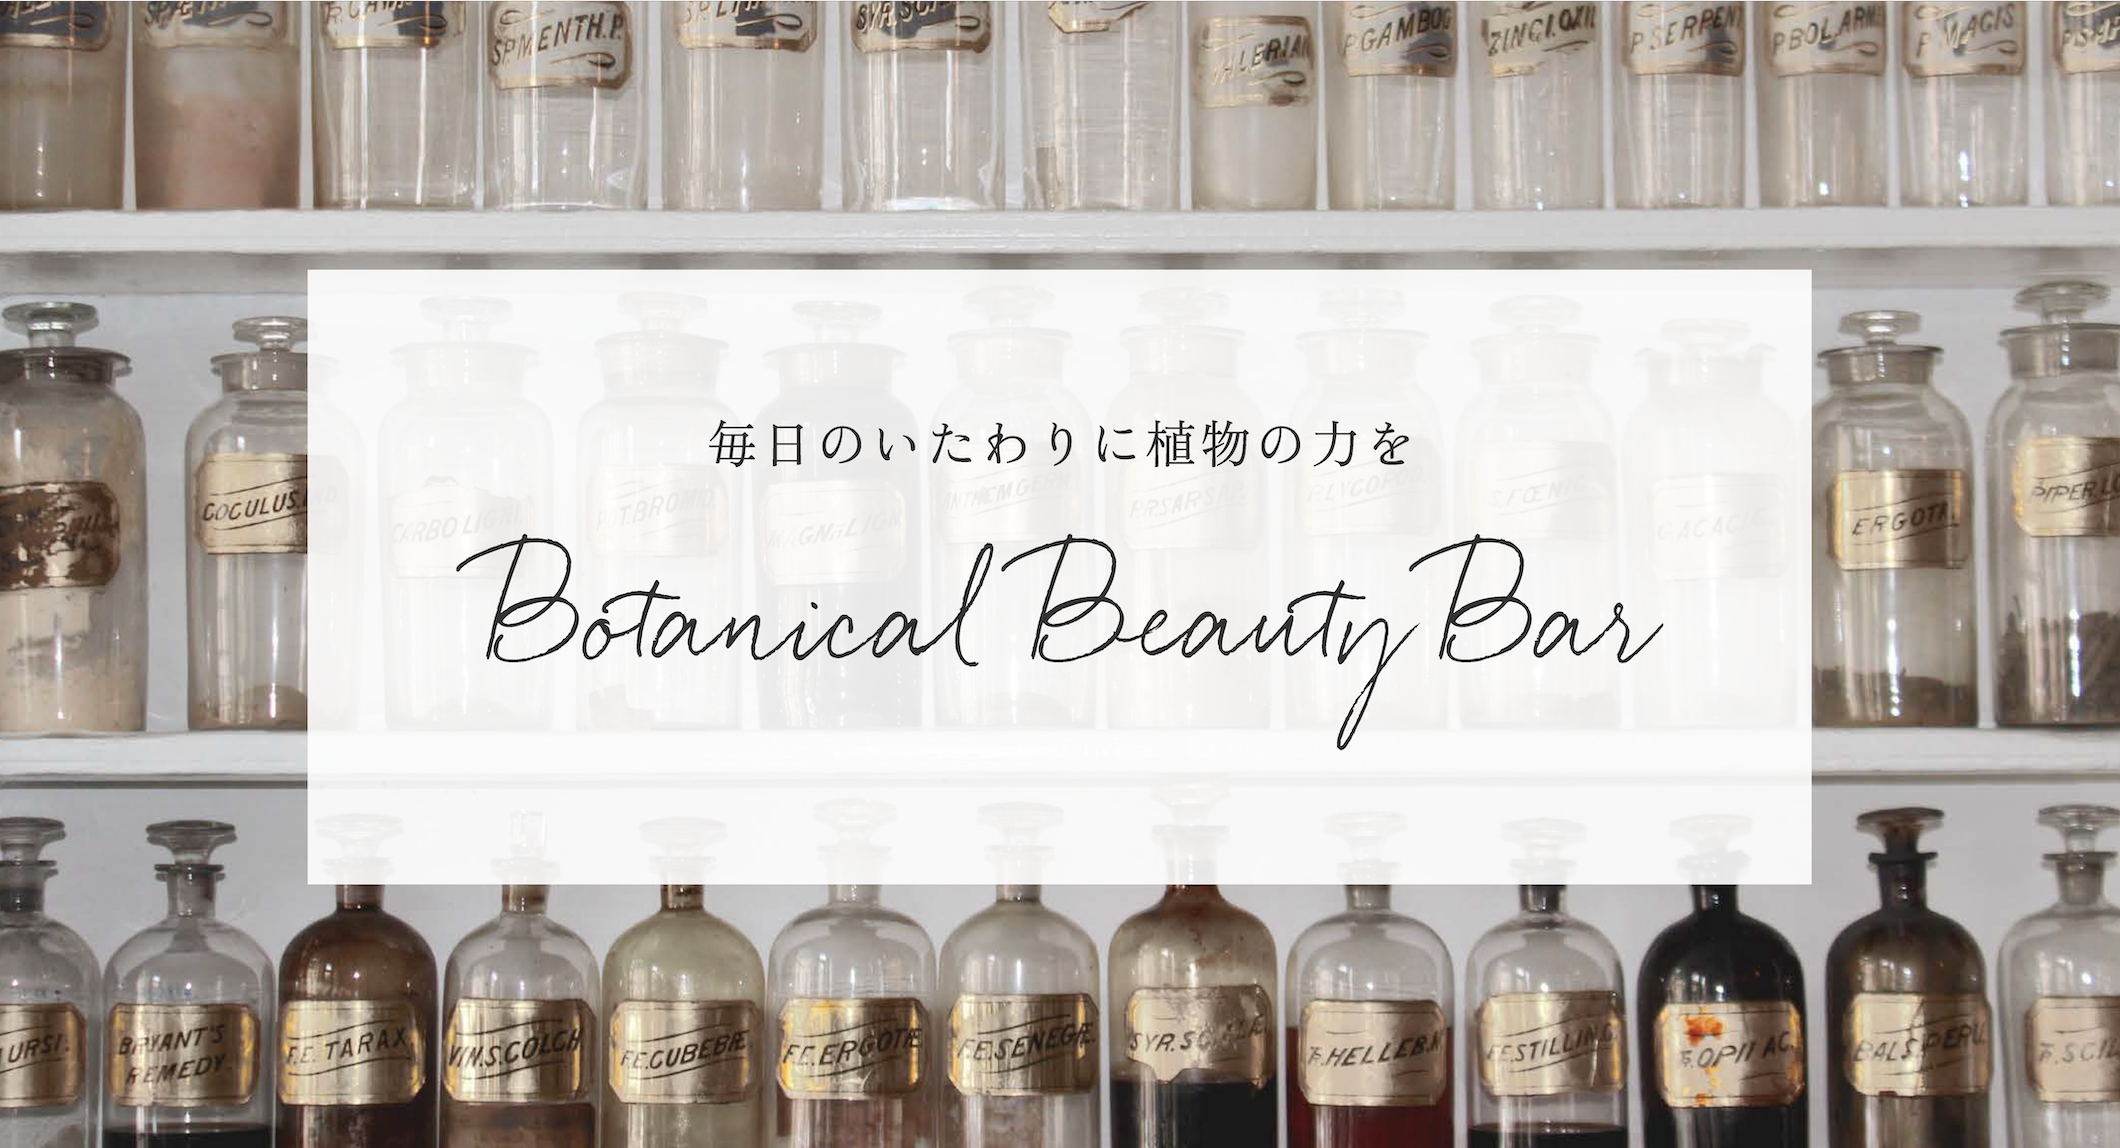 自分にぴったりのボタニカル化粧水レシピがわかる 特設サイト Botanical Beauty Bar をオープン 公益社団法人 日本アロマ 環境協会のプレスリリース